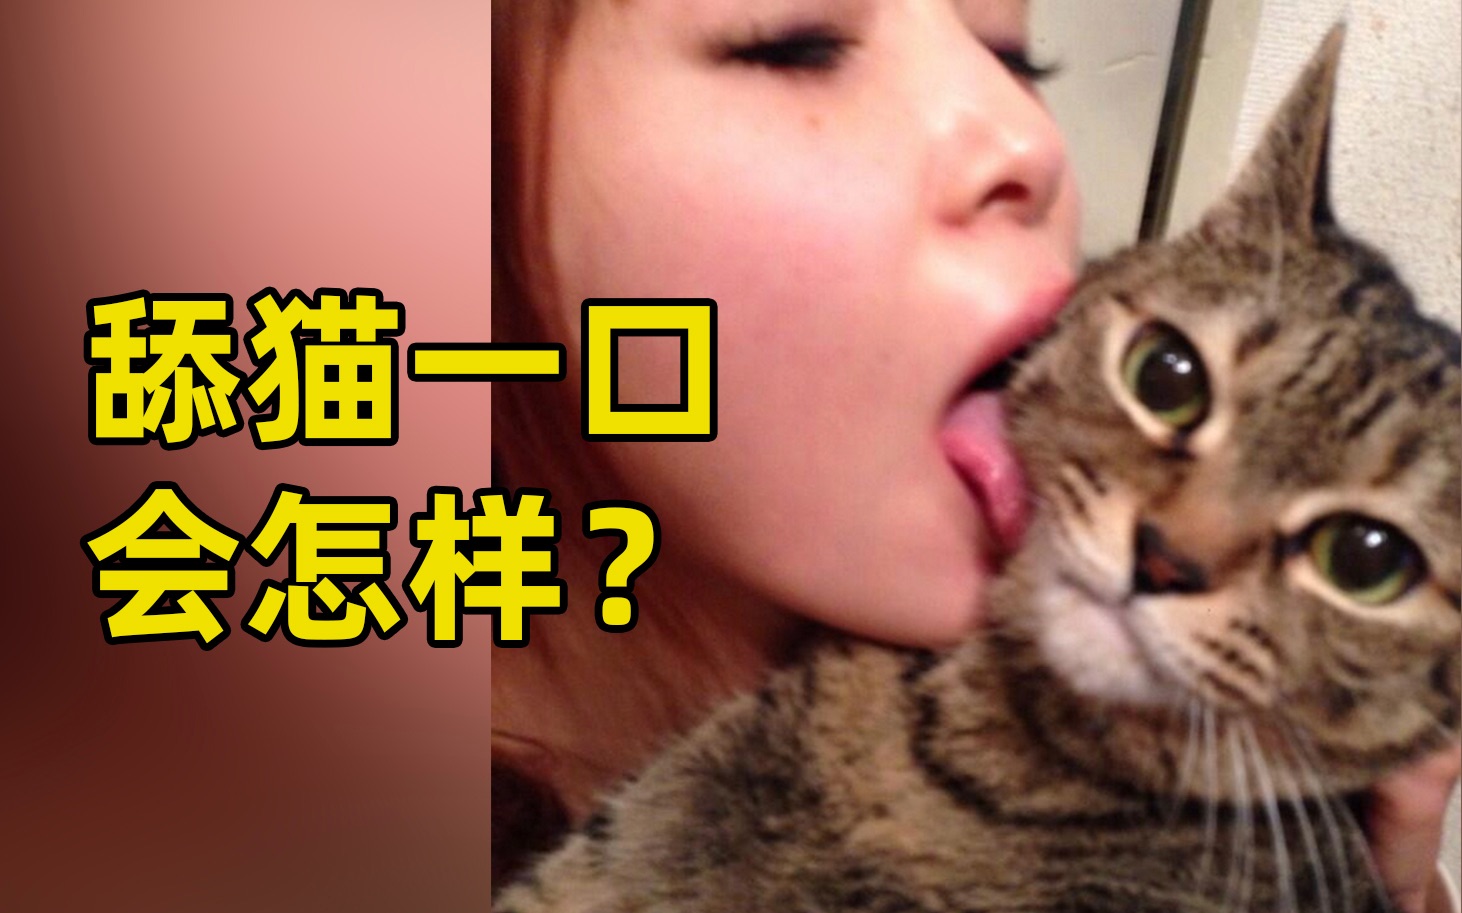 当猫舔你的时候，你突然舔它一口，它会有什么反应呢？